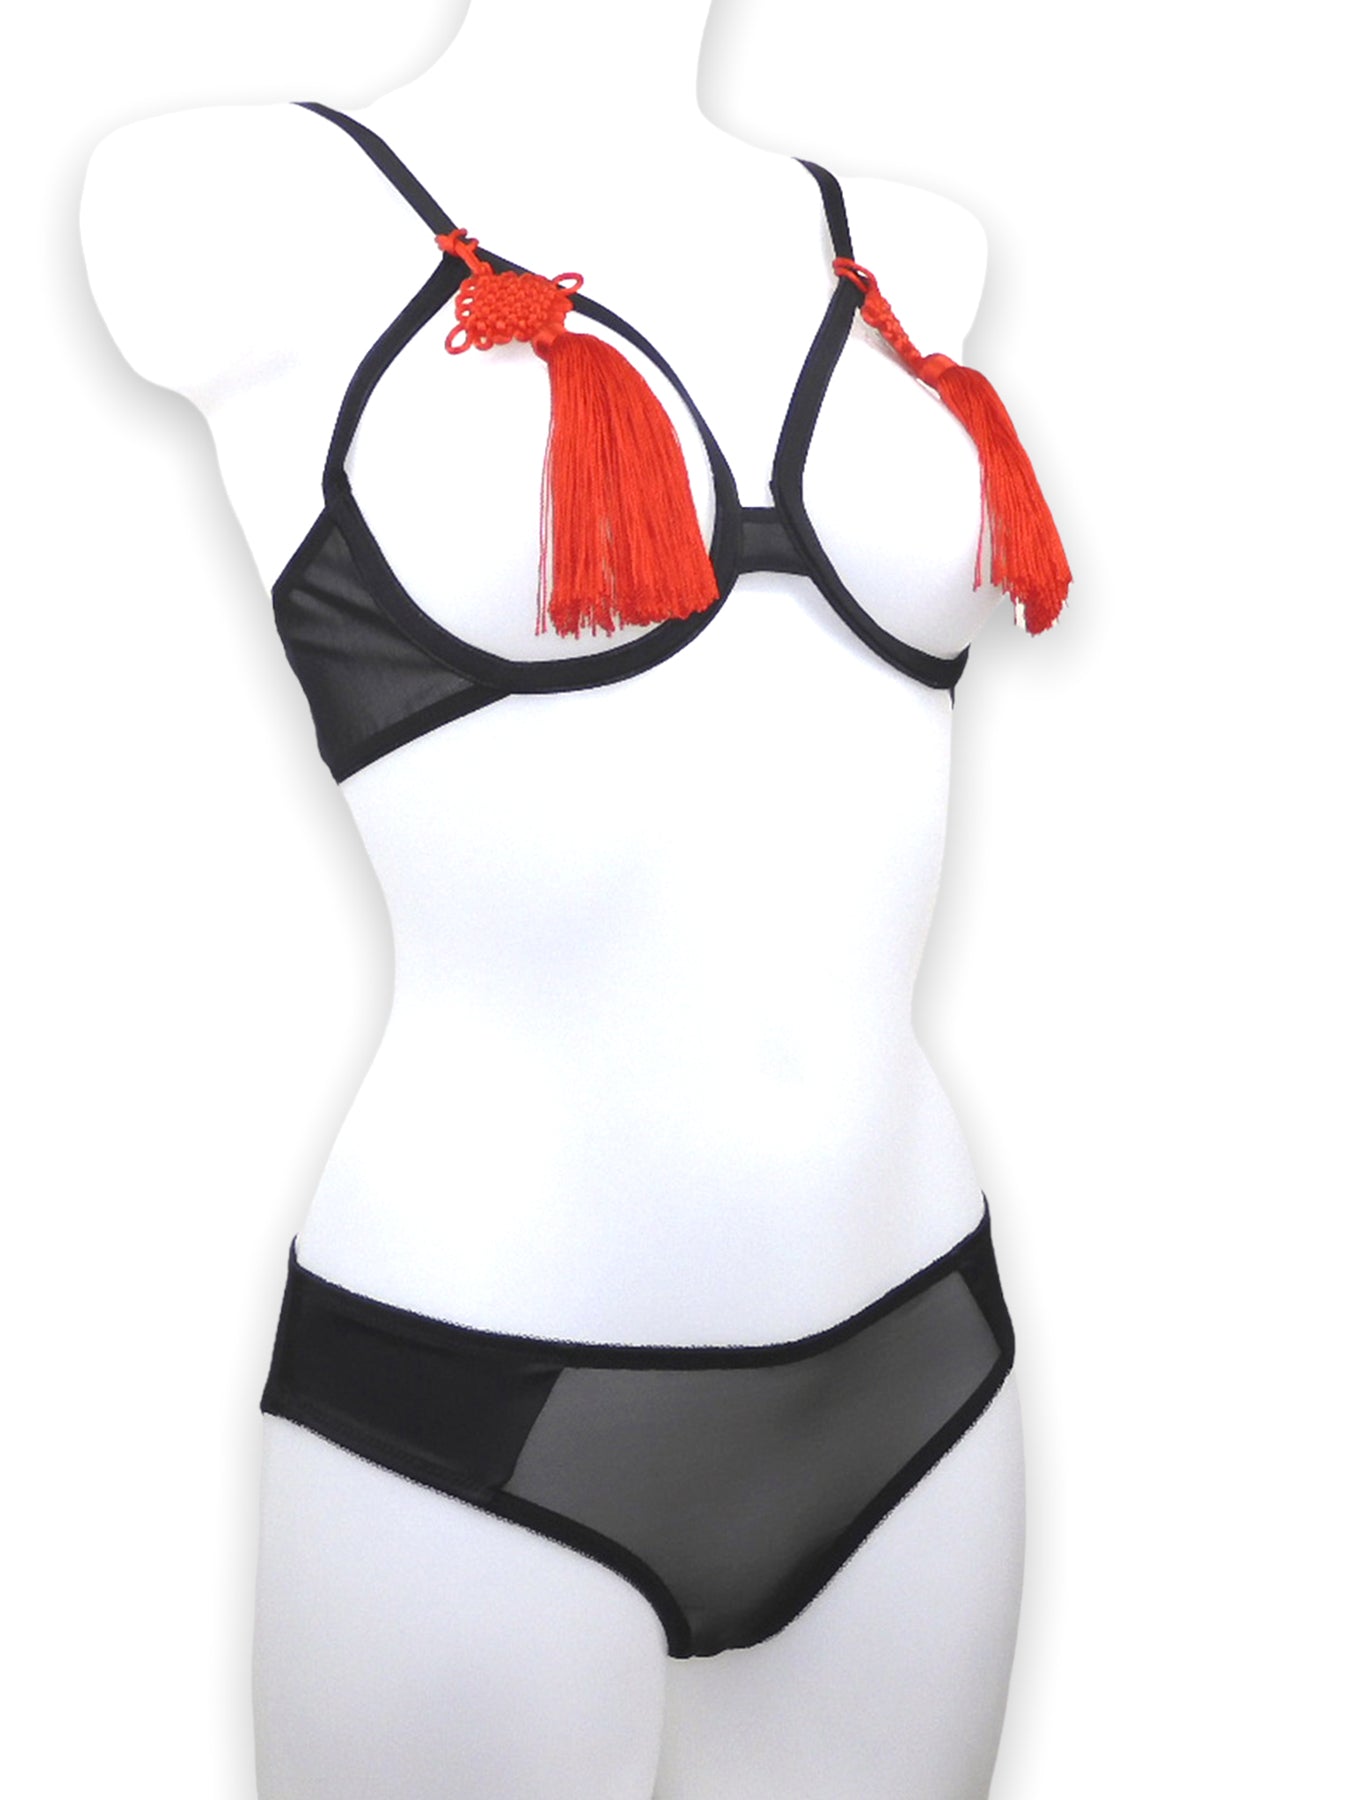 Schwarzer Open Cup Bügel Burlesque BH mit roten chinesischen Quasten und schwarzem Satin Slip seitlich| fishbelly handmade Lingerie